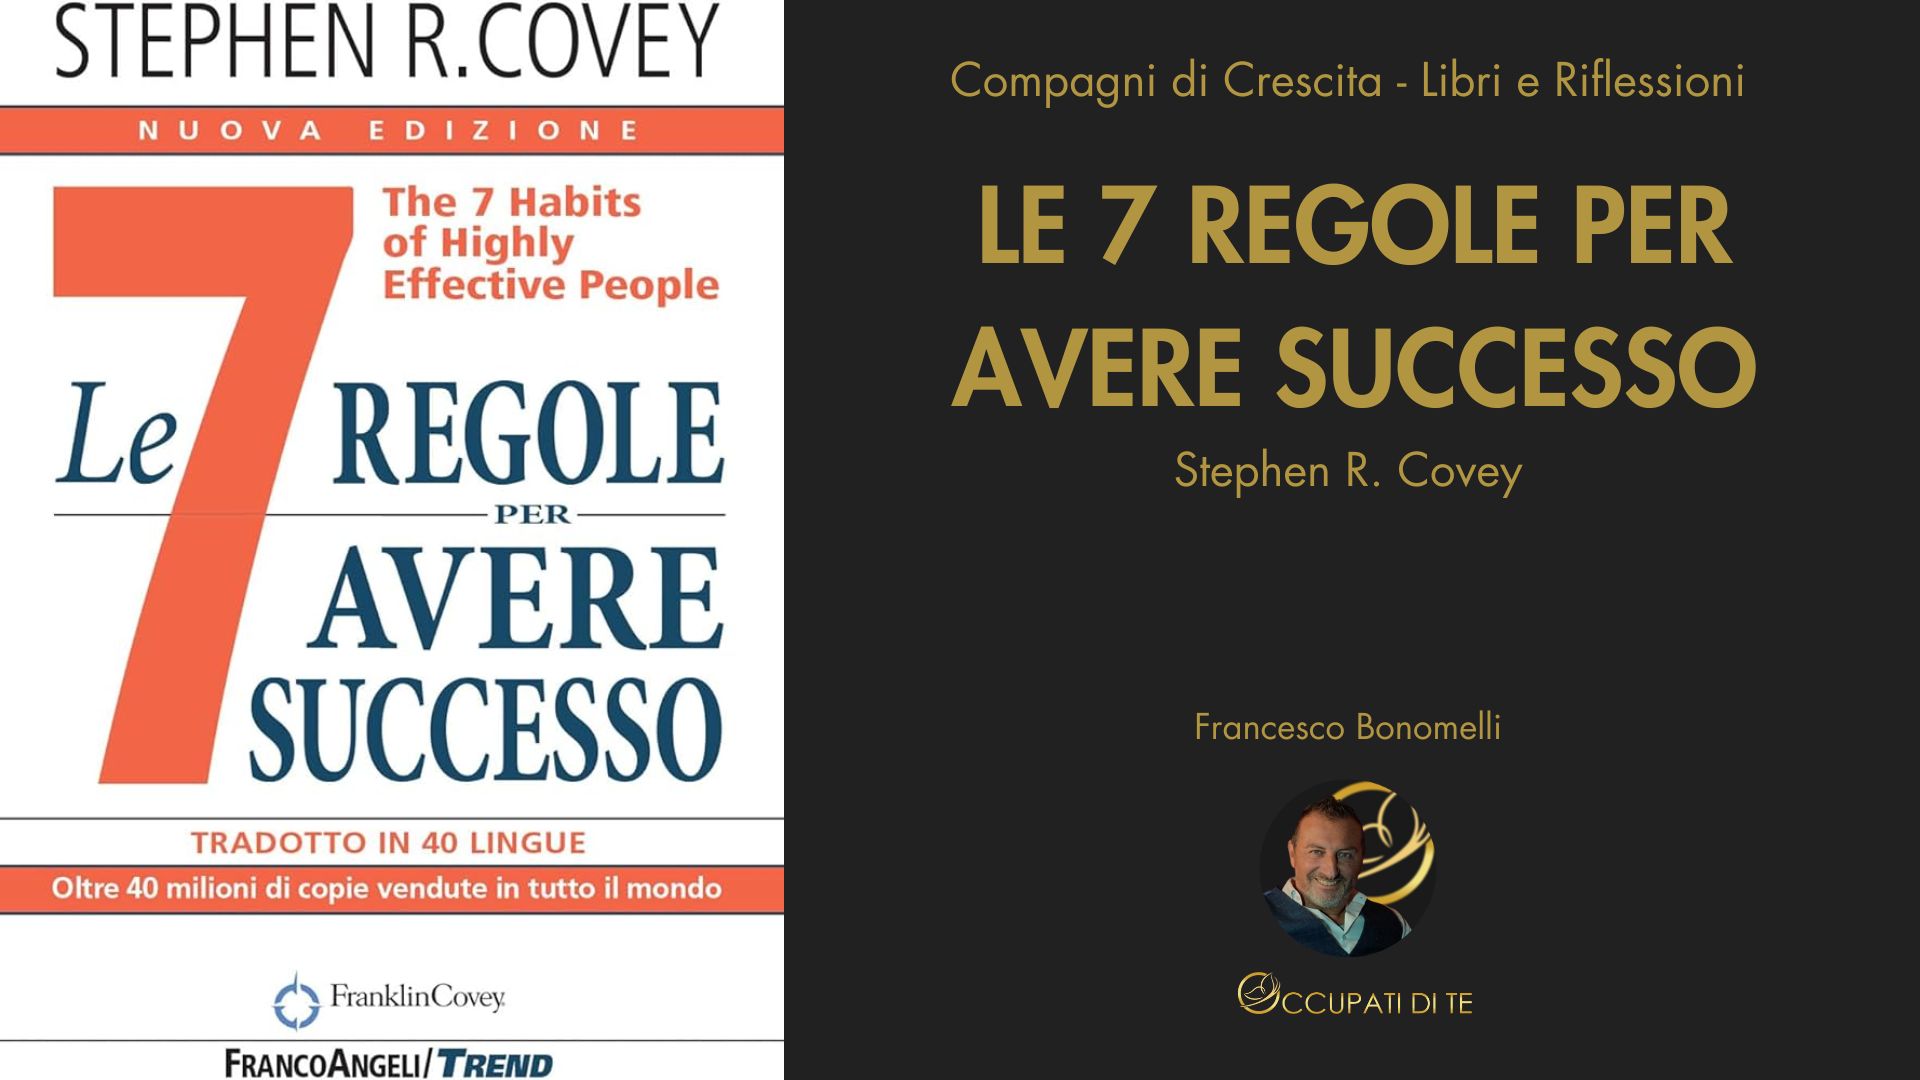 Le 7 Regole per Avere Successo di Stephen R. Covey